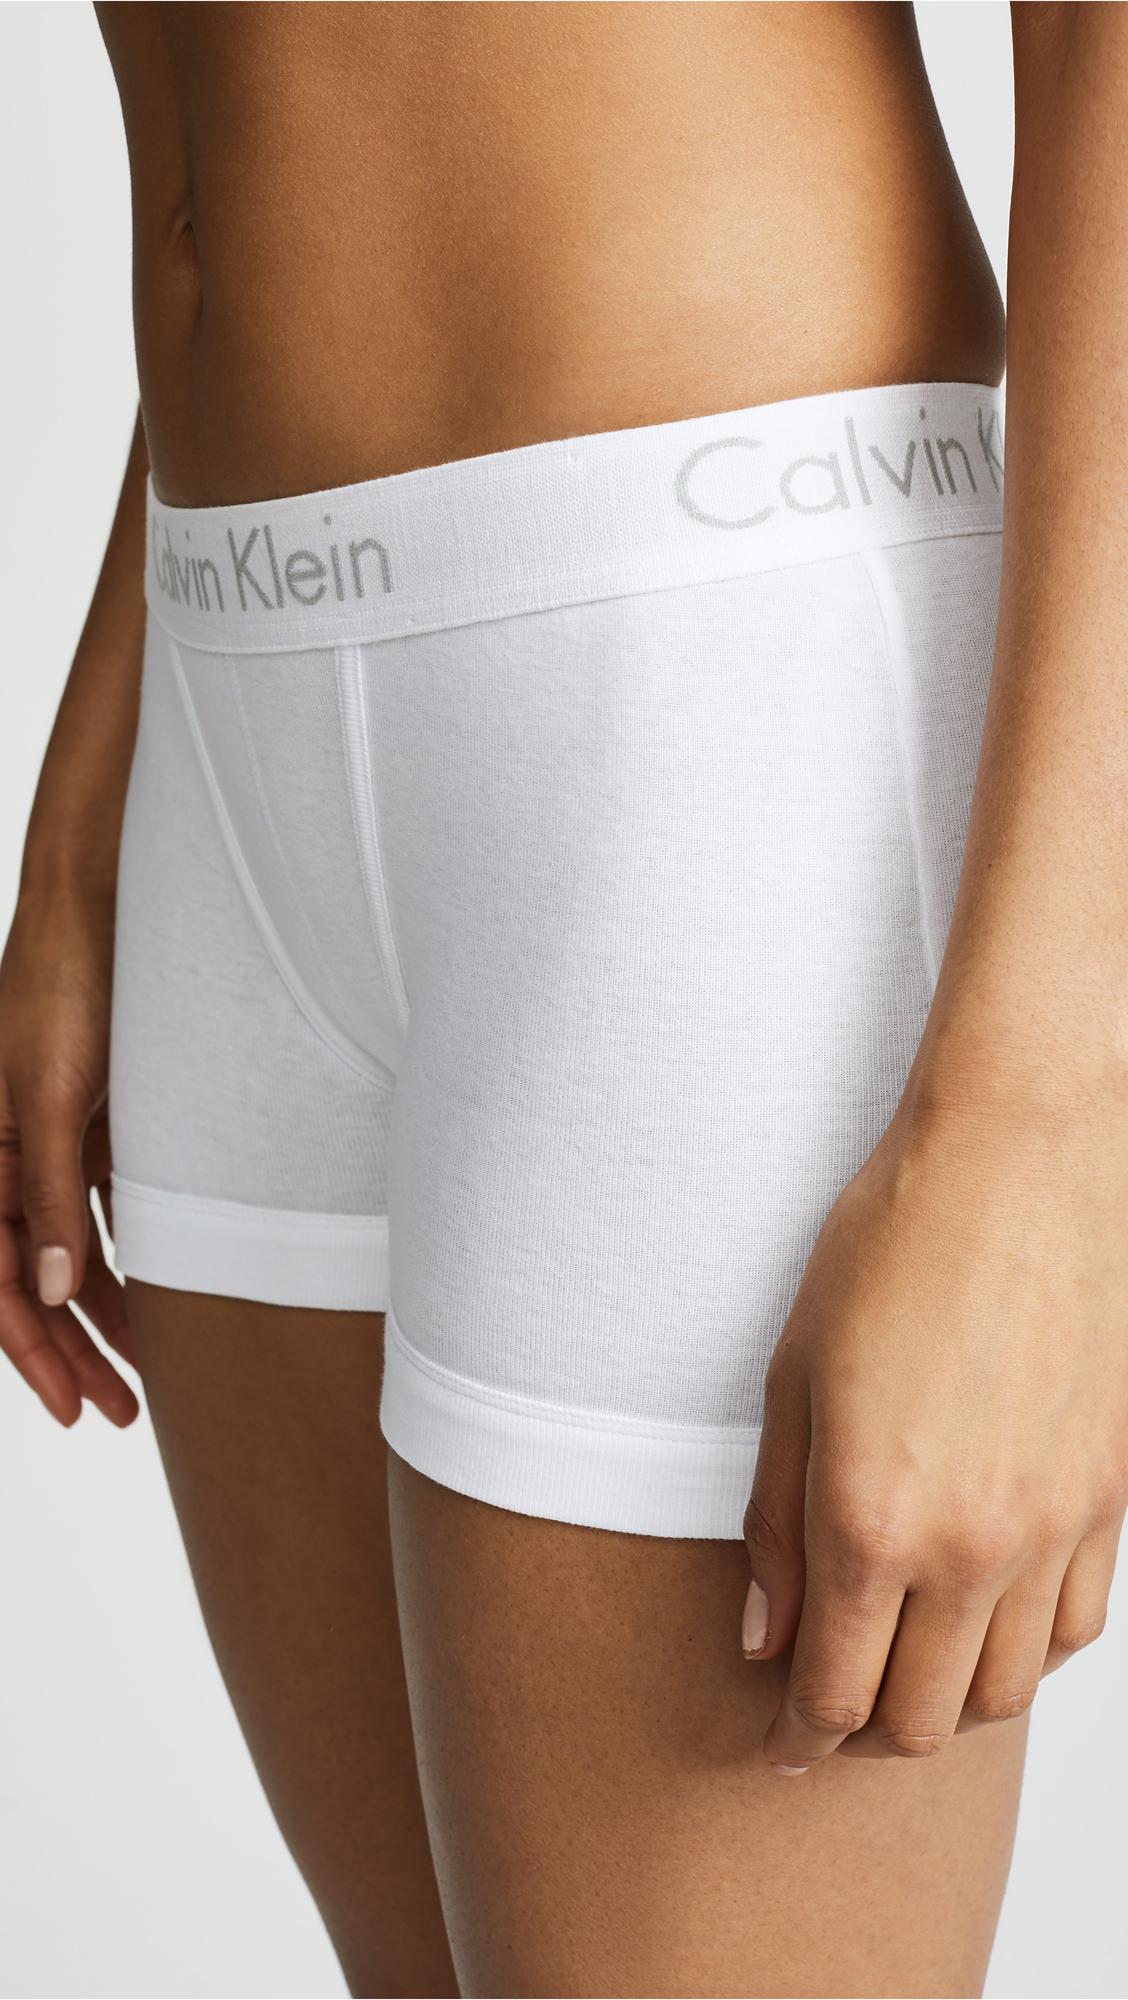 Calvin Klein Body Boy Shorts in White | Lyst